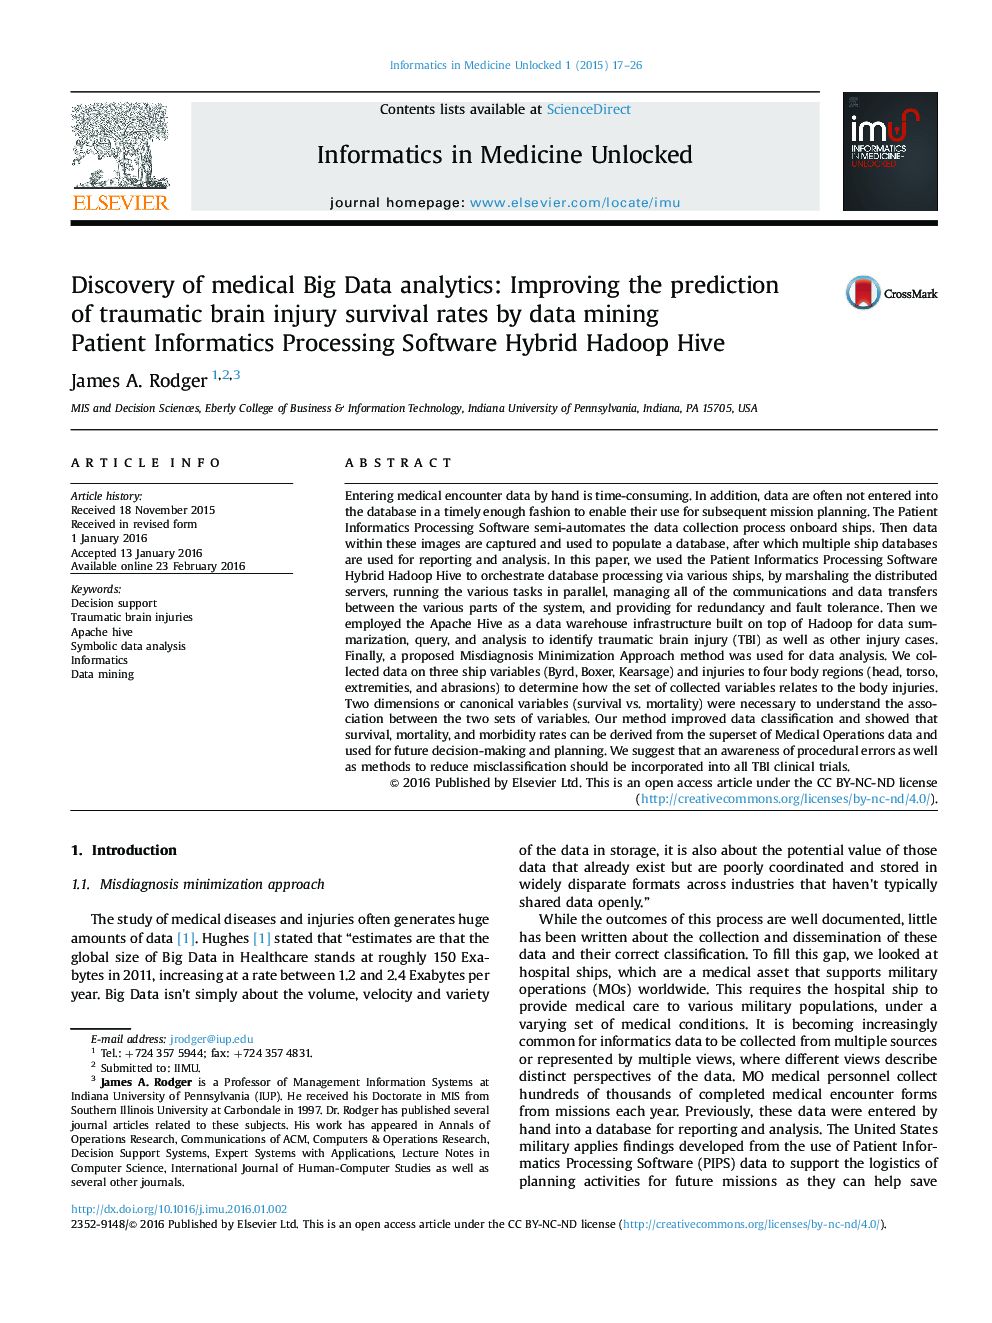 کشف تجزیه و تحلیل داده های پزشکی بزرگ: بهبود پیش بینی میزان بقای سکته مغزی ترومایی توسط داده کاوی انفورماتیک بیمار با پردازش Software Hybrid Hadoop Hive